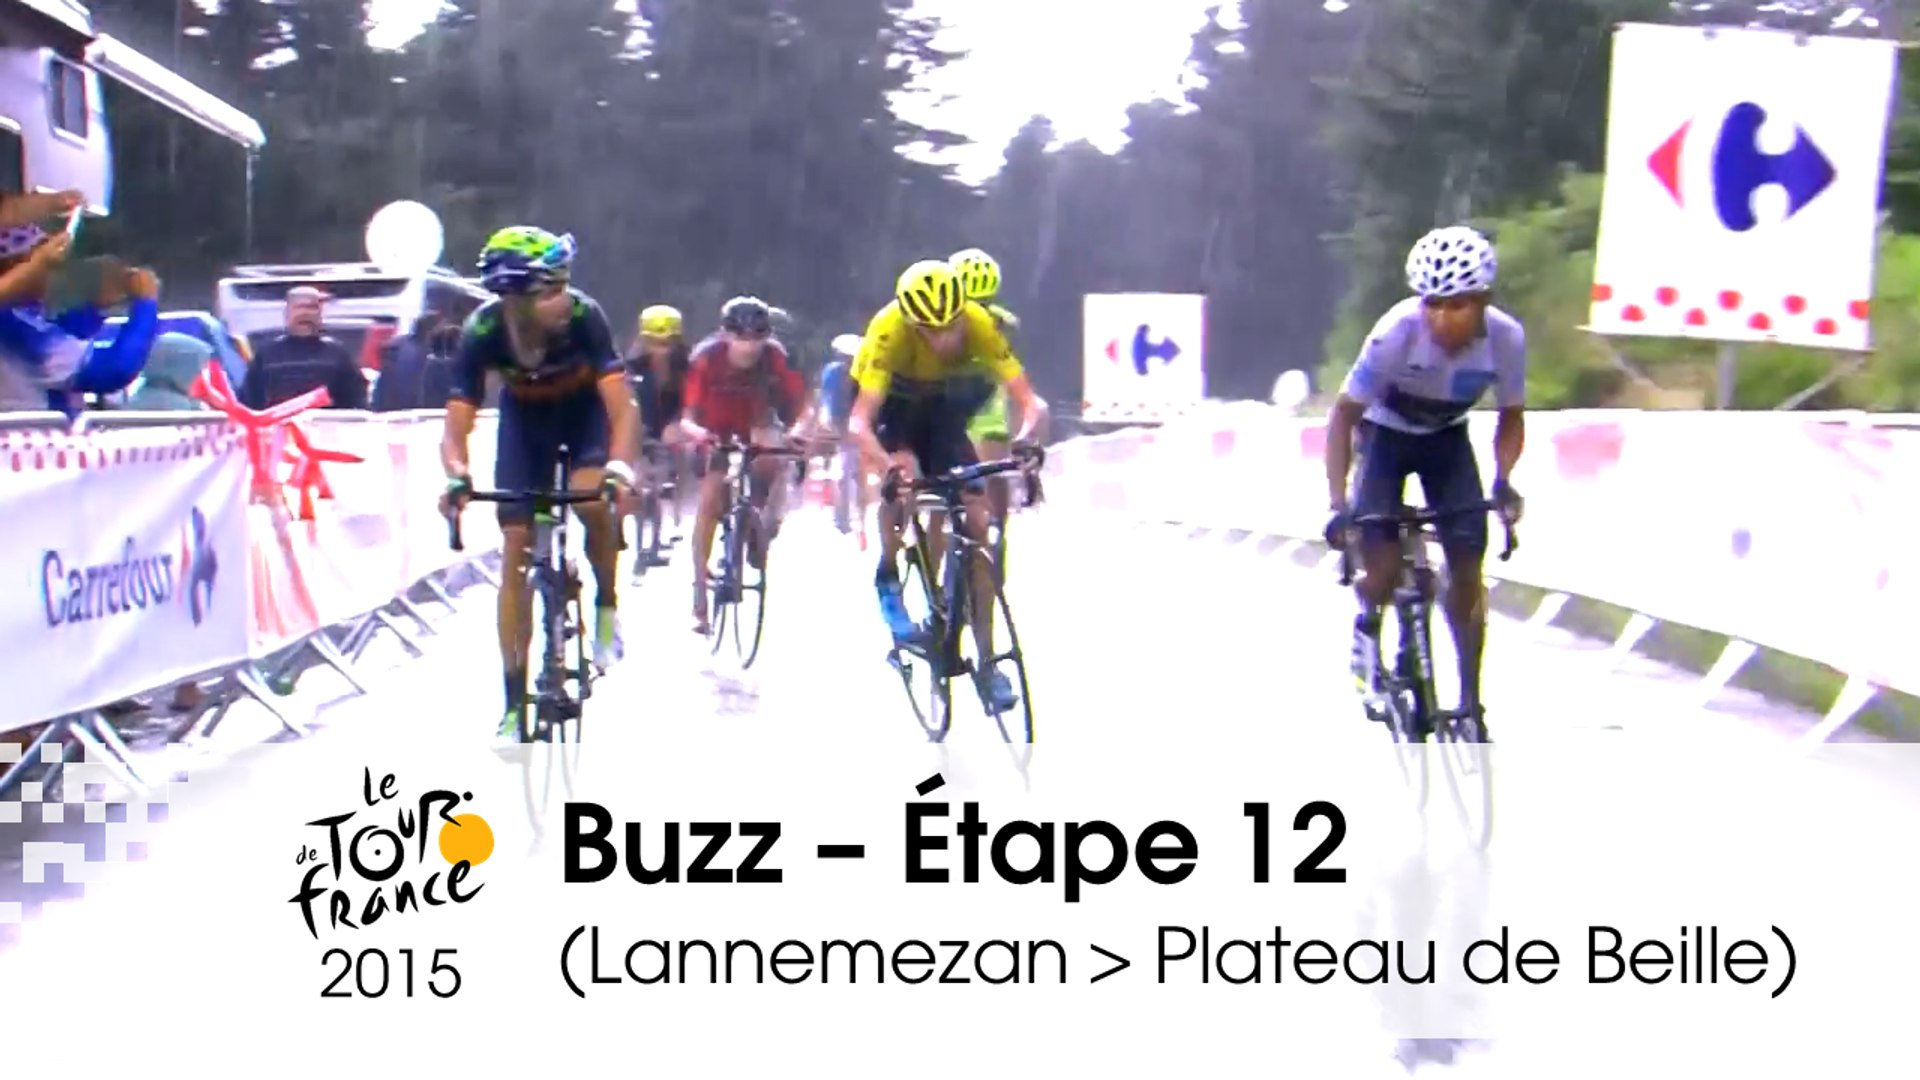 Buzz du jour / Buzz of the day - Étape 12 (Lannemezan > Plateau de Beille)  - Tour de France 2015 - Vidéo Dailymotion